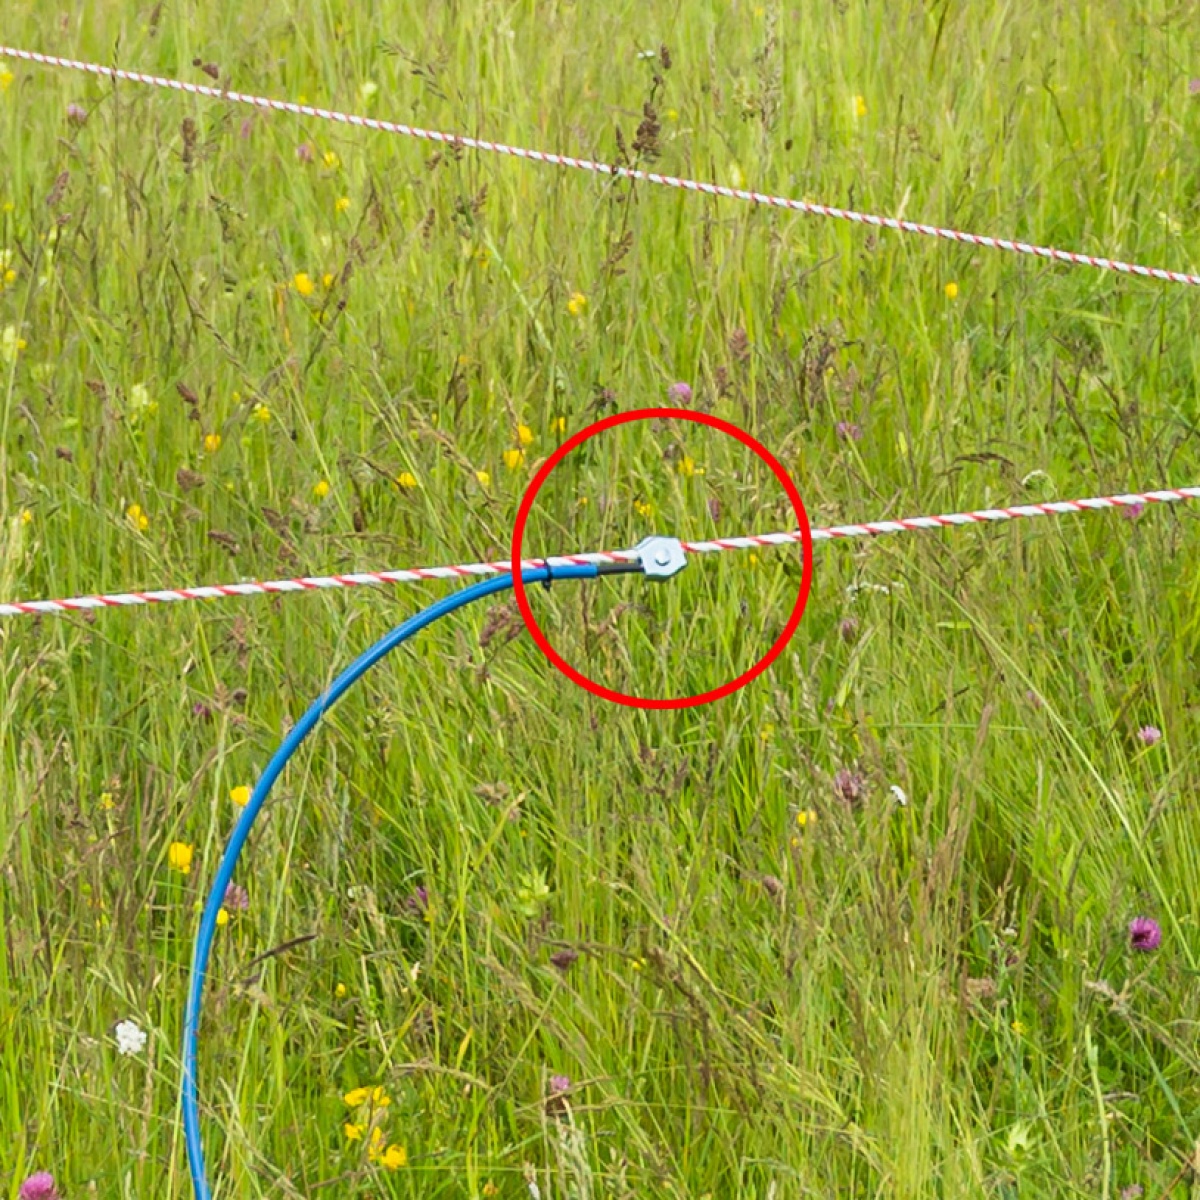 Készülék + kerítés csatlakoztatására alkalmas, magasfeszültségű kábel, 10 m